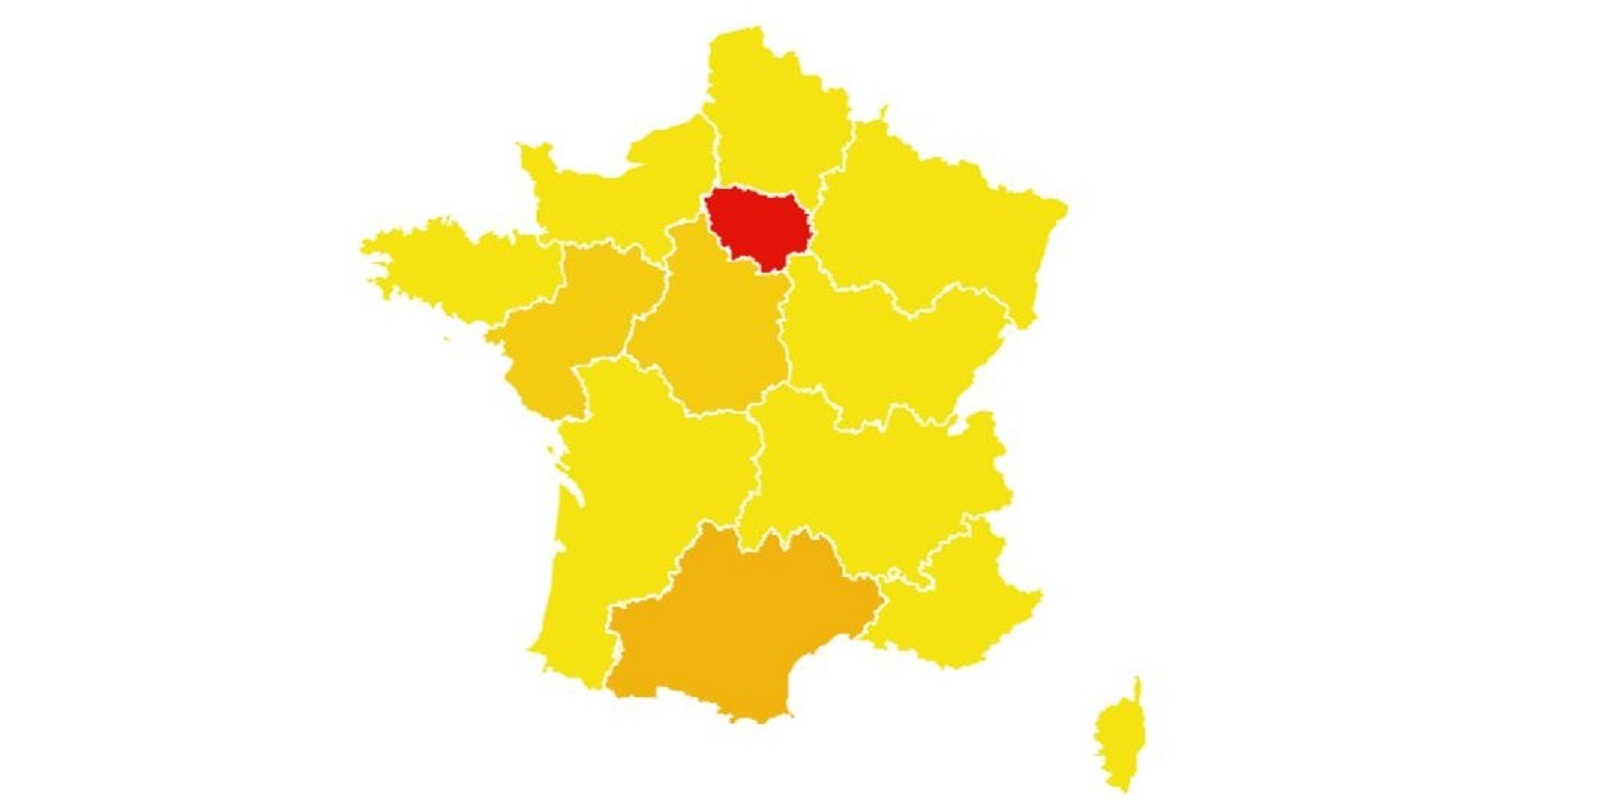 Emploi: quelles sont les régions de France les plus touchées par la crise du Covid-19?